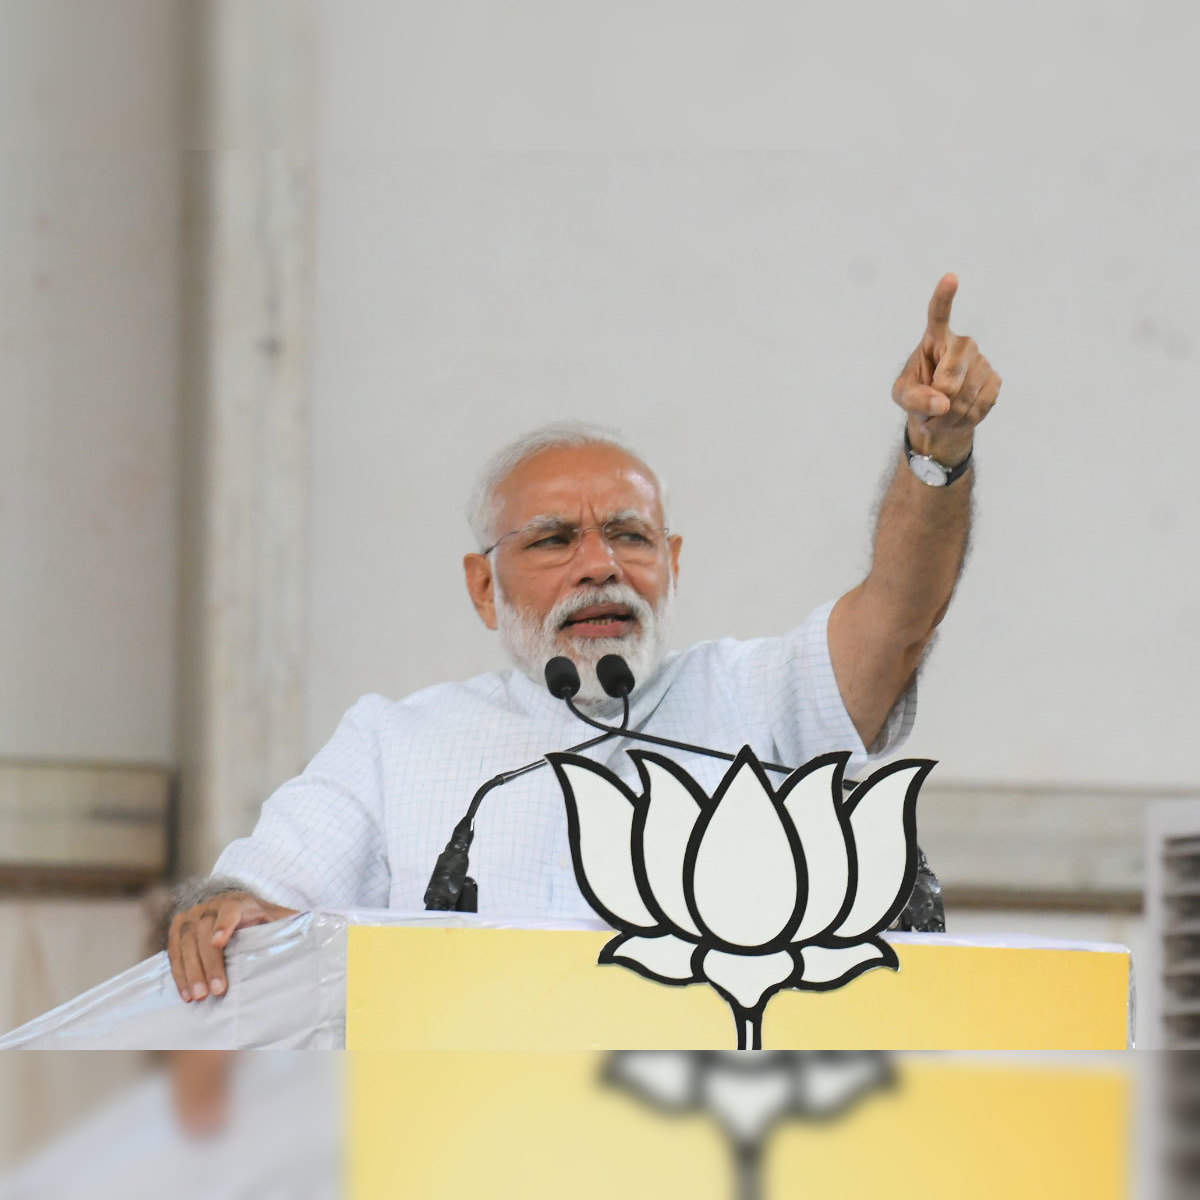 Narendra Modi: Narendra Modi accuses Congress of election scam